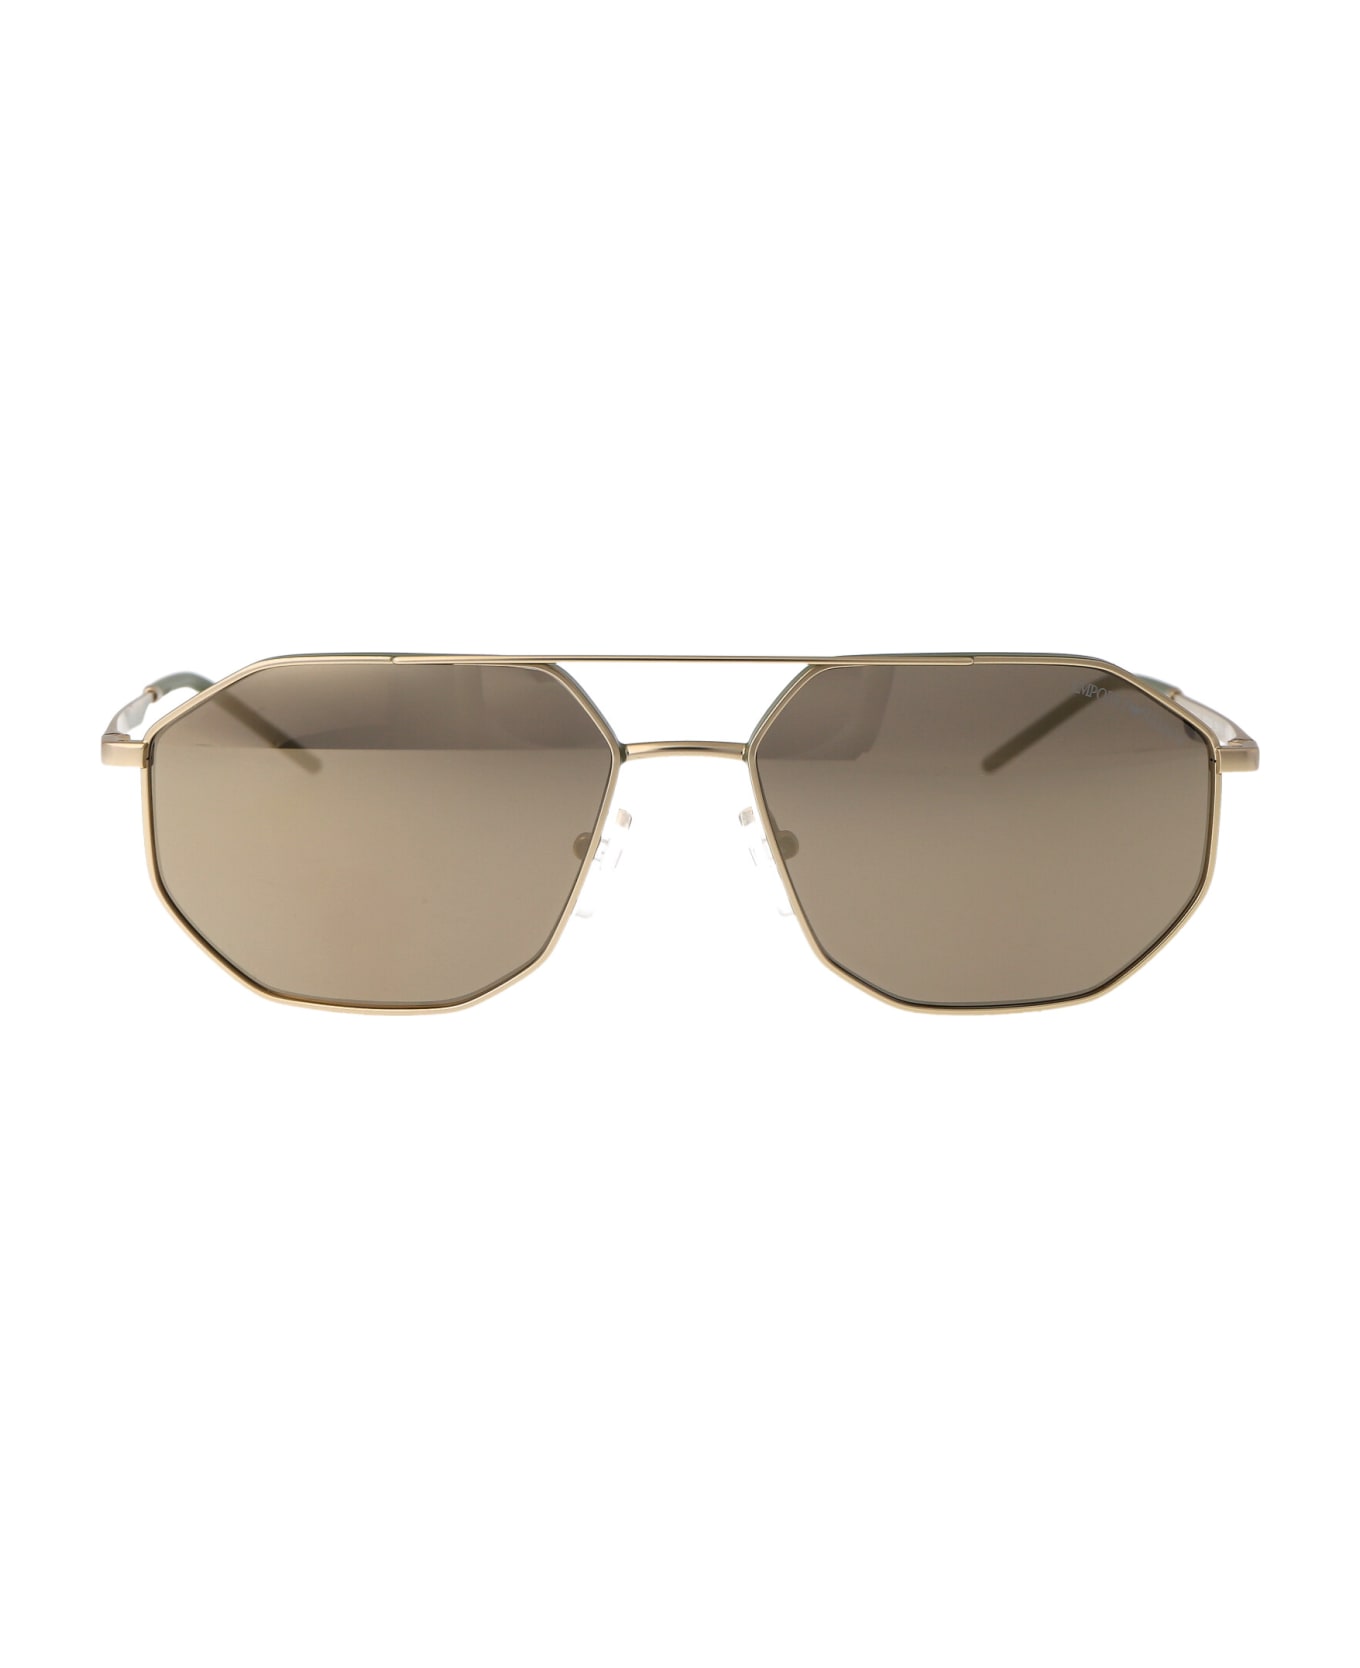 Emporio Armani 0ea2147 Sunglasses - 30025A Matte Gold